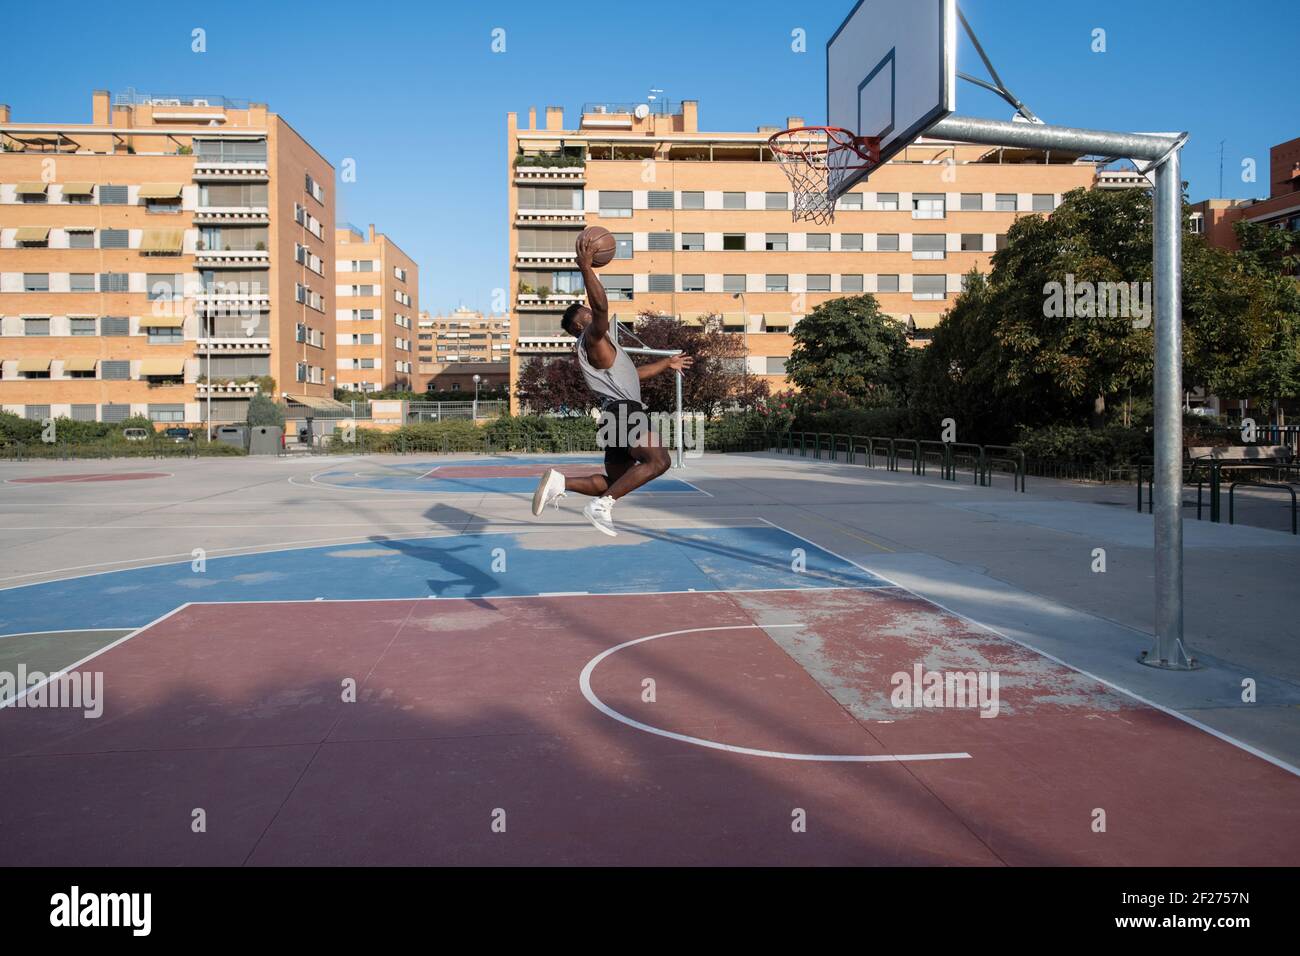 Black man scoring ball during basketball match Stock Photo